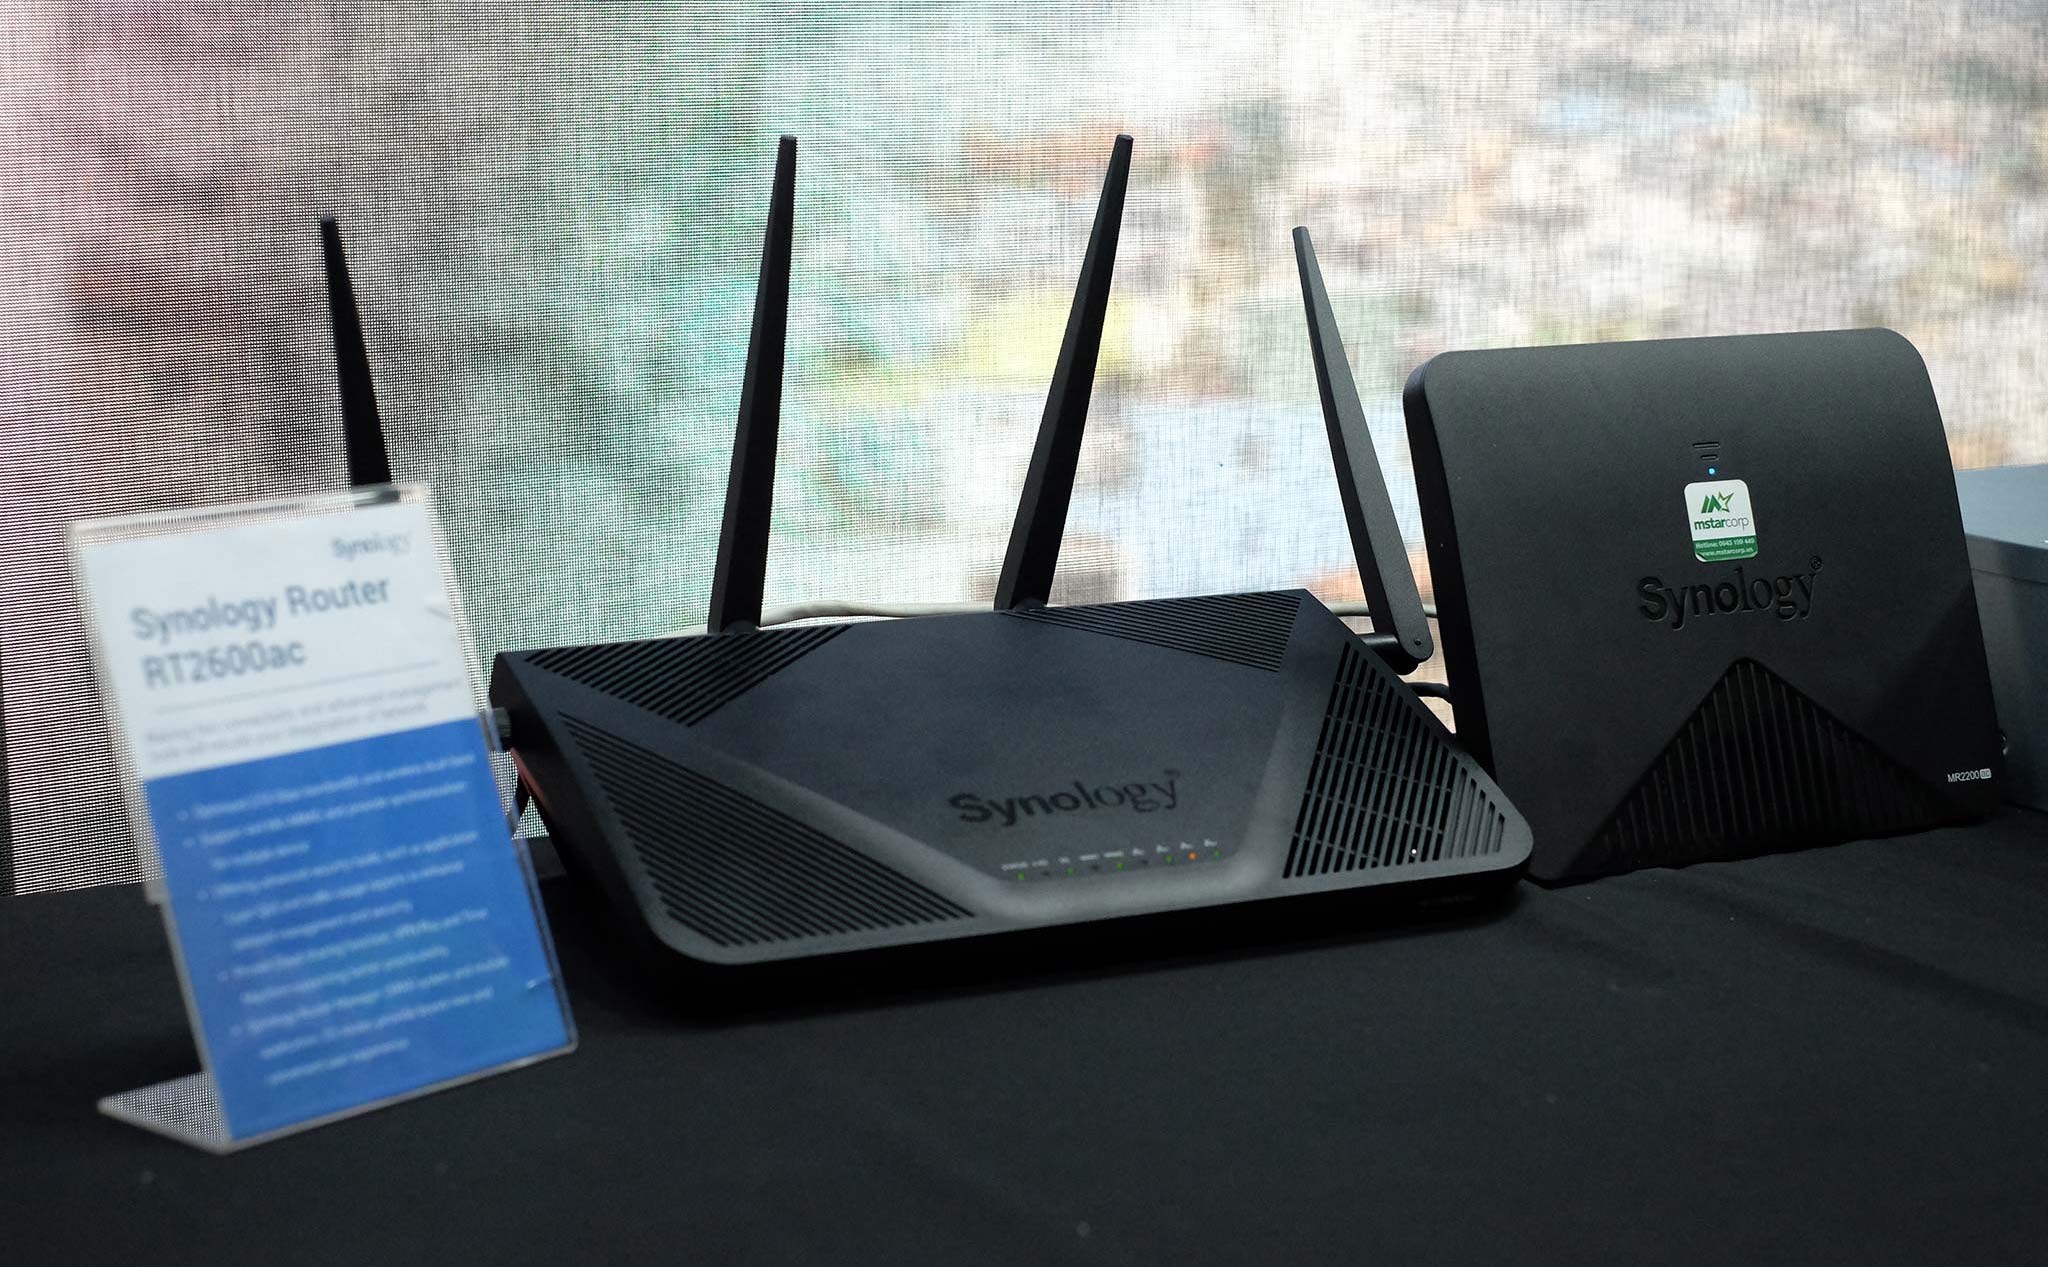 Synology nói về hệ sinh thái NAS cho doanh nghiệp và cá nhân, giới thiệu mesh router chạy linux